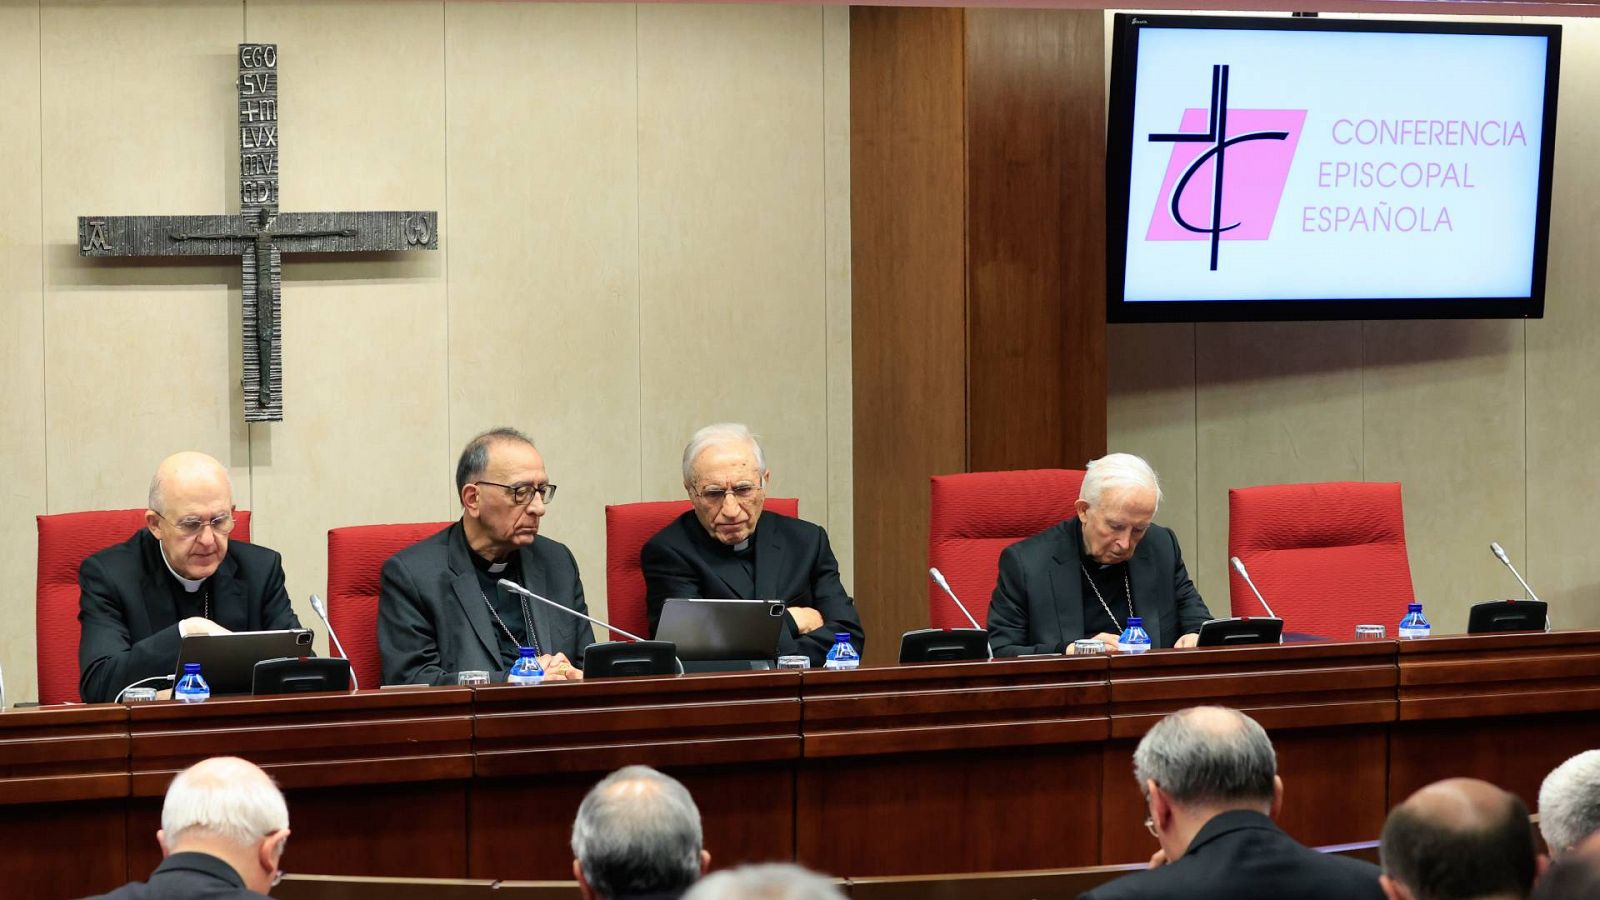 De izquierda a derecha, el nuncio apostólico en España, Bernardito Auza, el presidente de la Conferencia Episcopal Española, Juan José Omella y el cardenal Rouco Varela